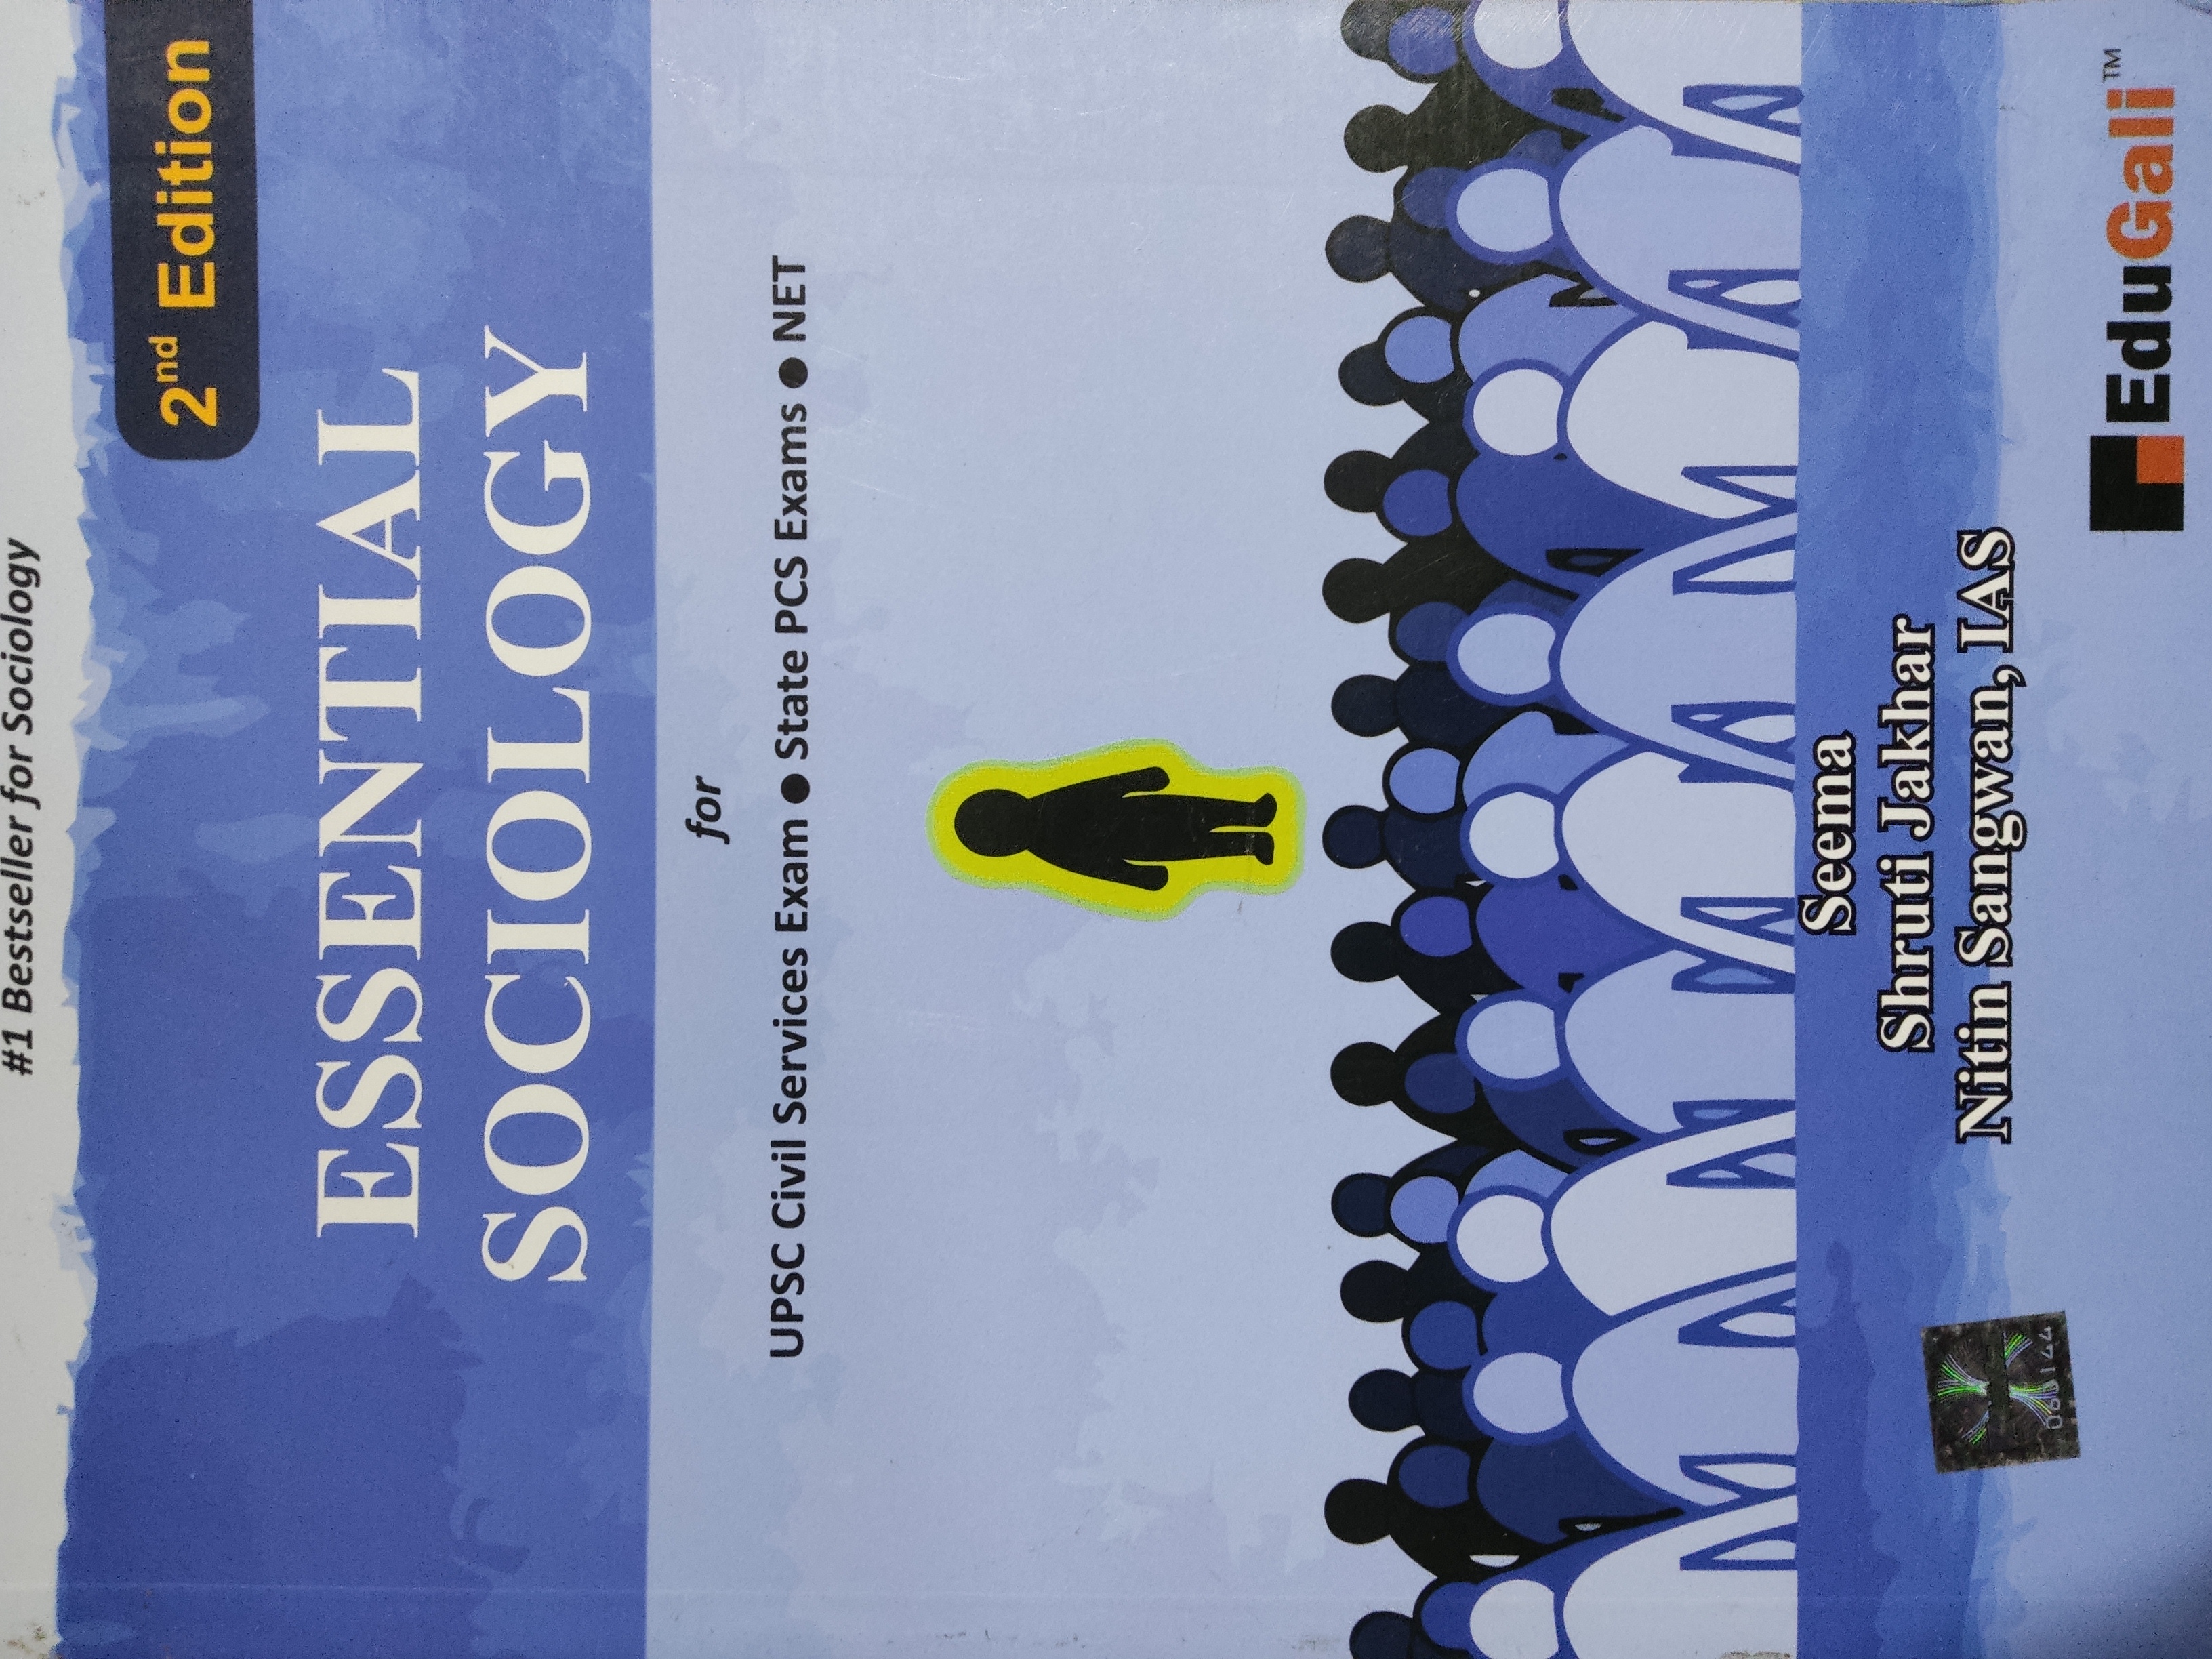 Essential Sociology - 2 Edition 